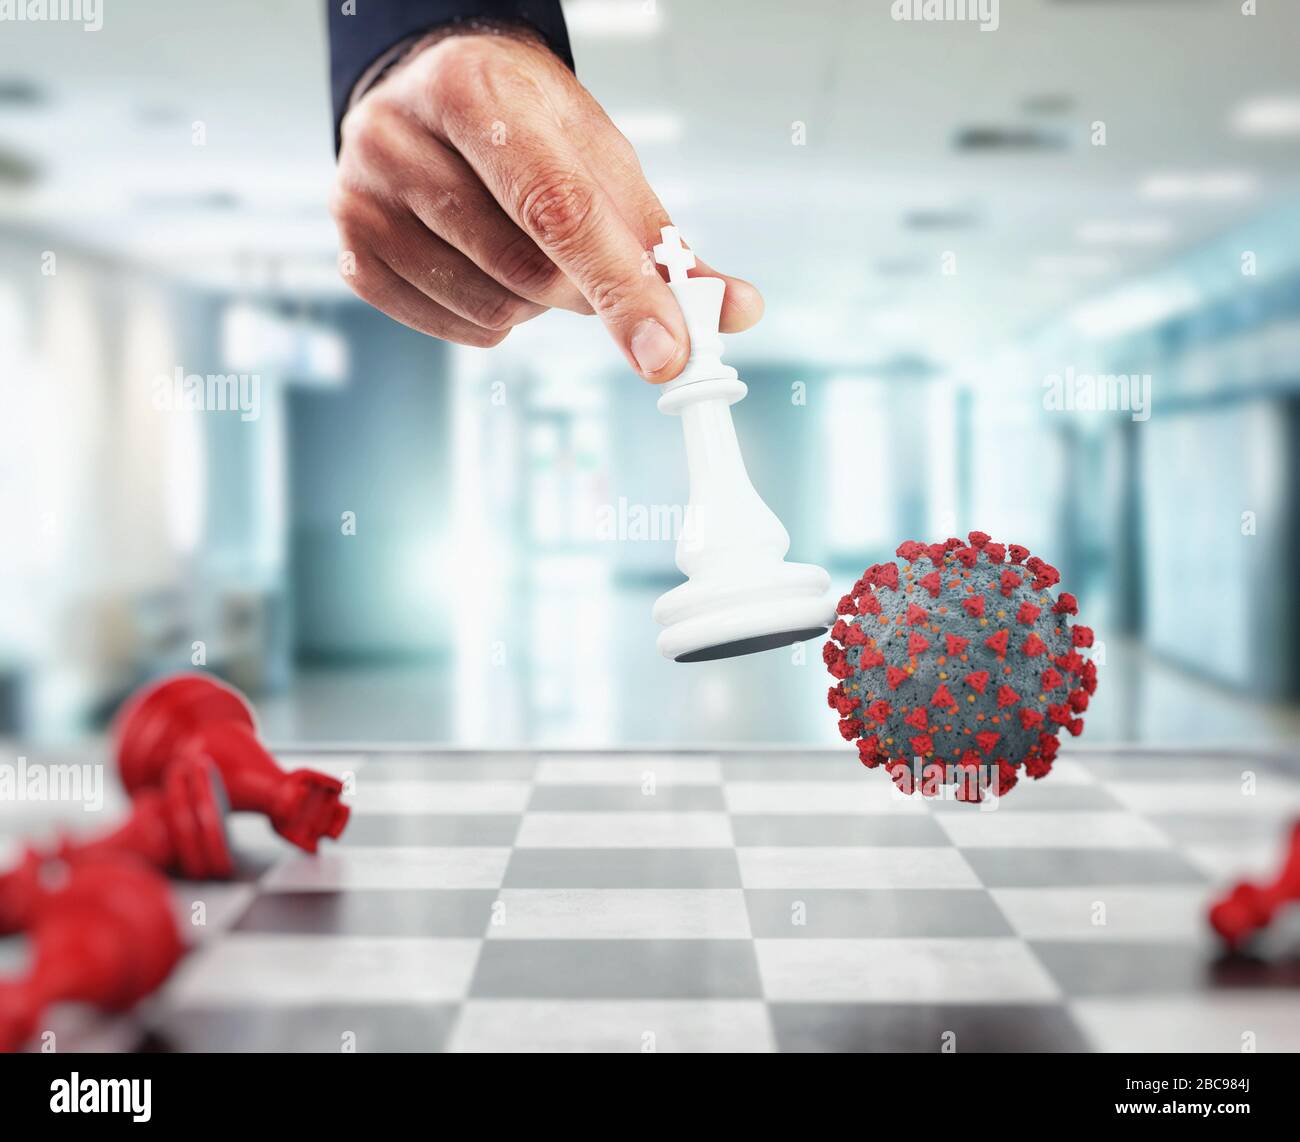 Gagnez le défi avec le virus dans un jeu d'échecs Banque D'Images